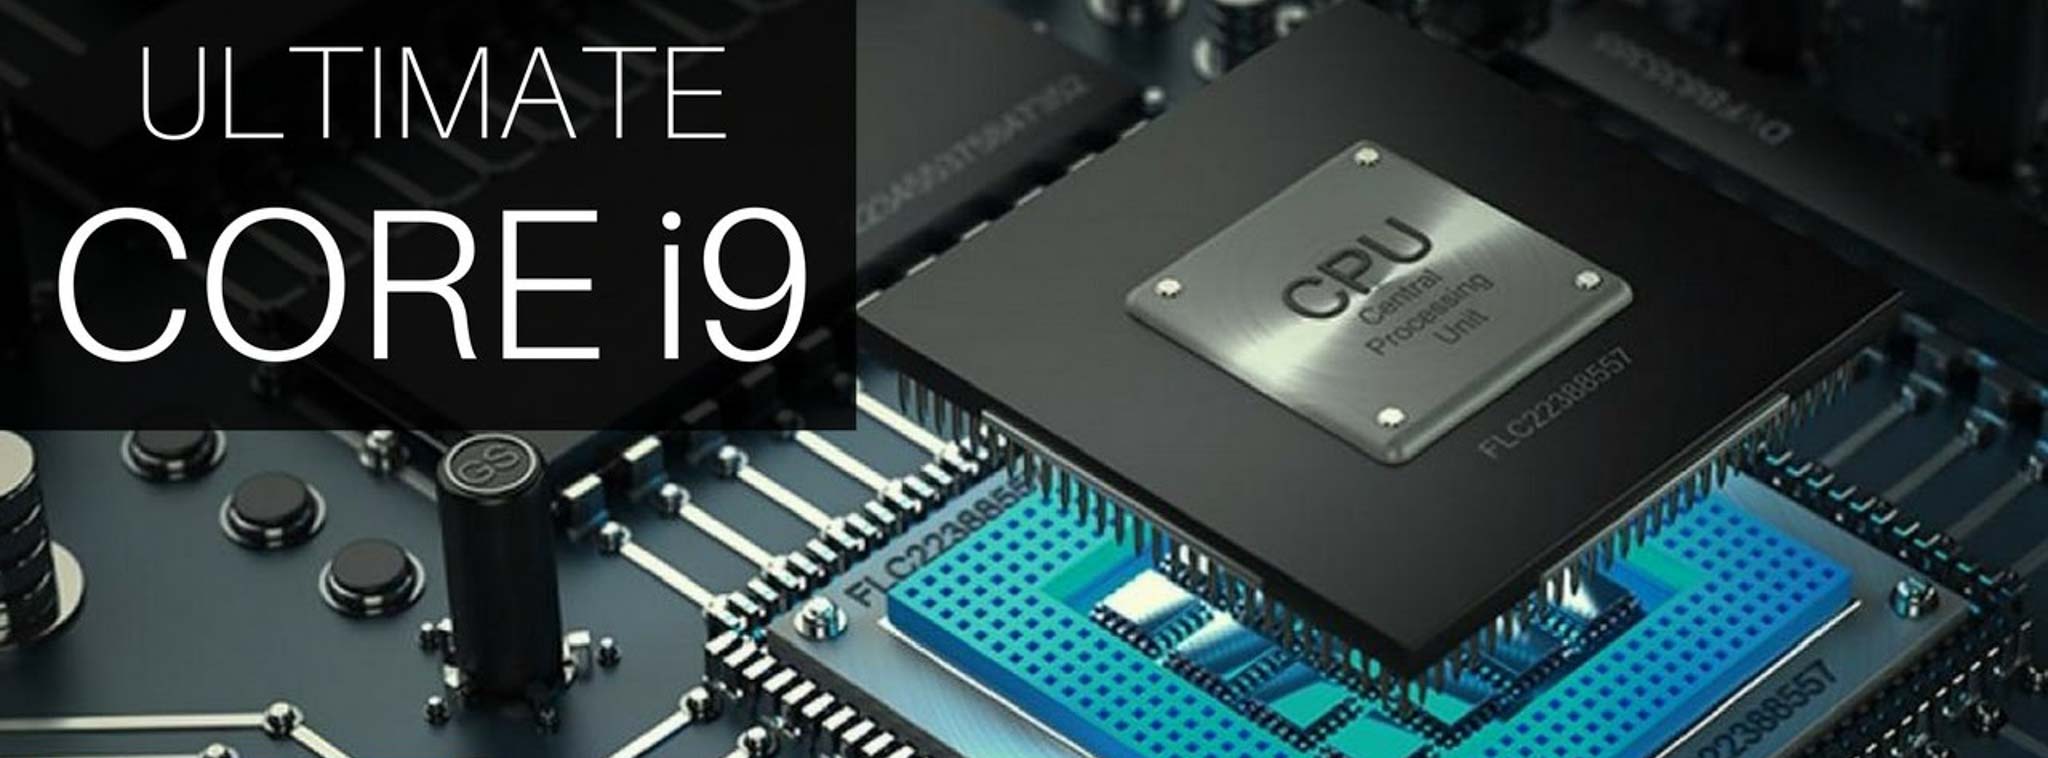 Intel sẽ giới thiệu CPU Core i9 dành cho laptop vào nửa đầu 2018